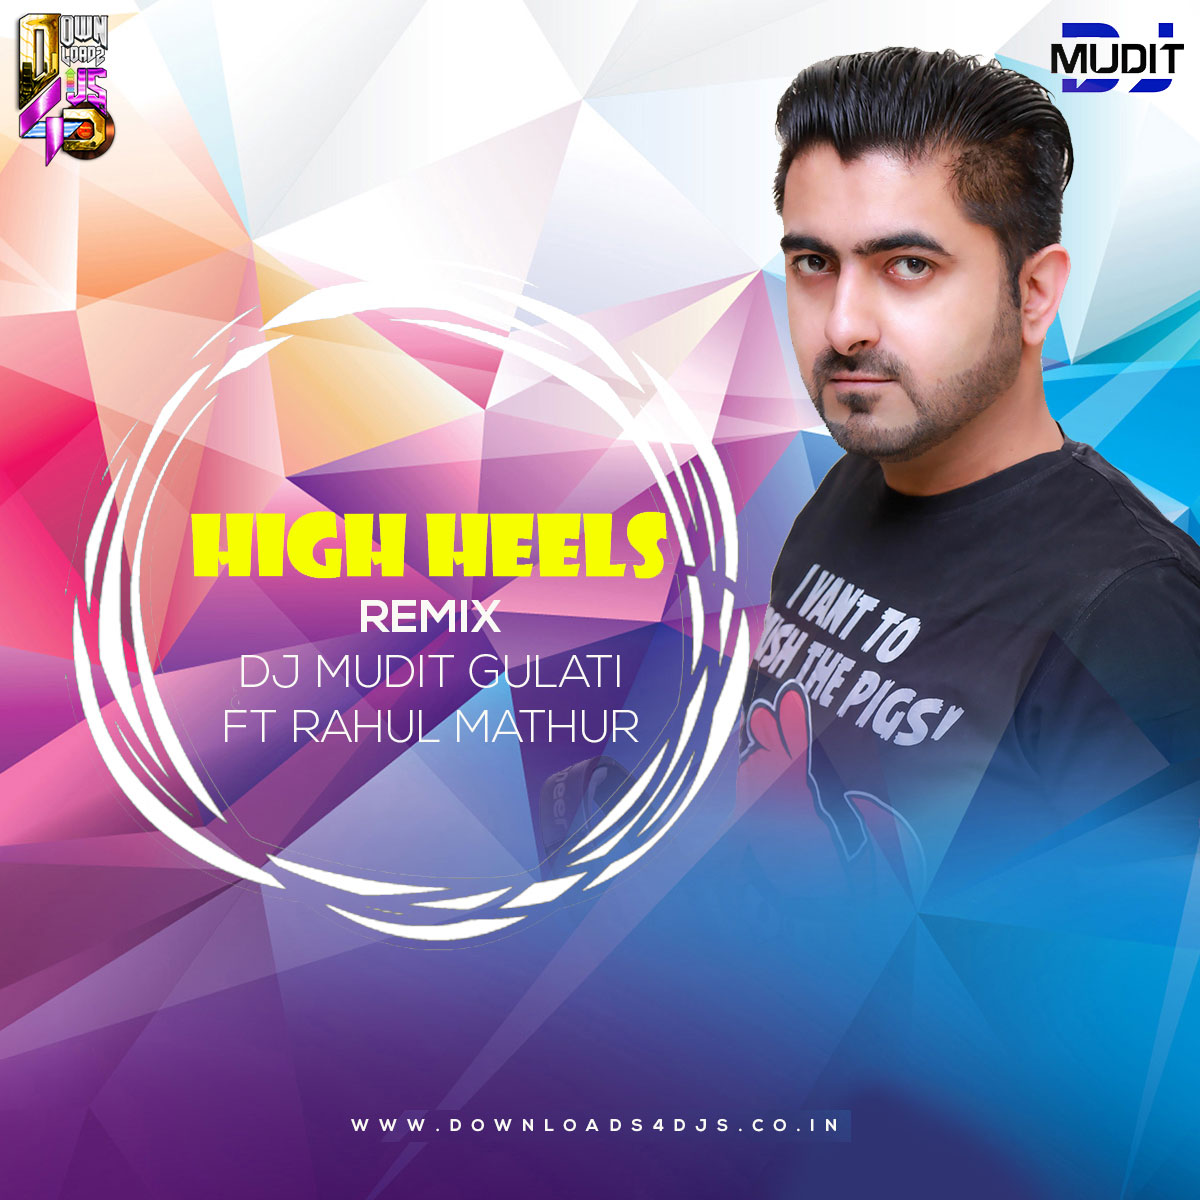 Podcast:High Heels - Dj Shiva Remix:Dj Shiva